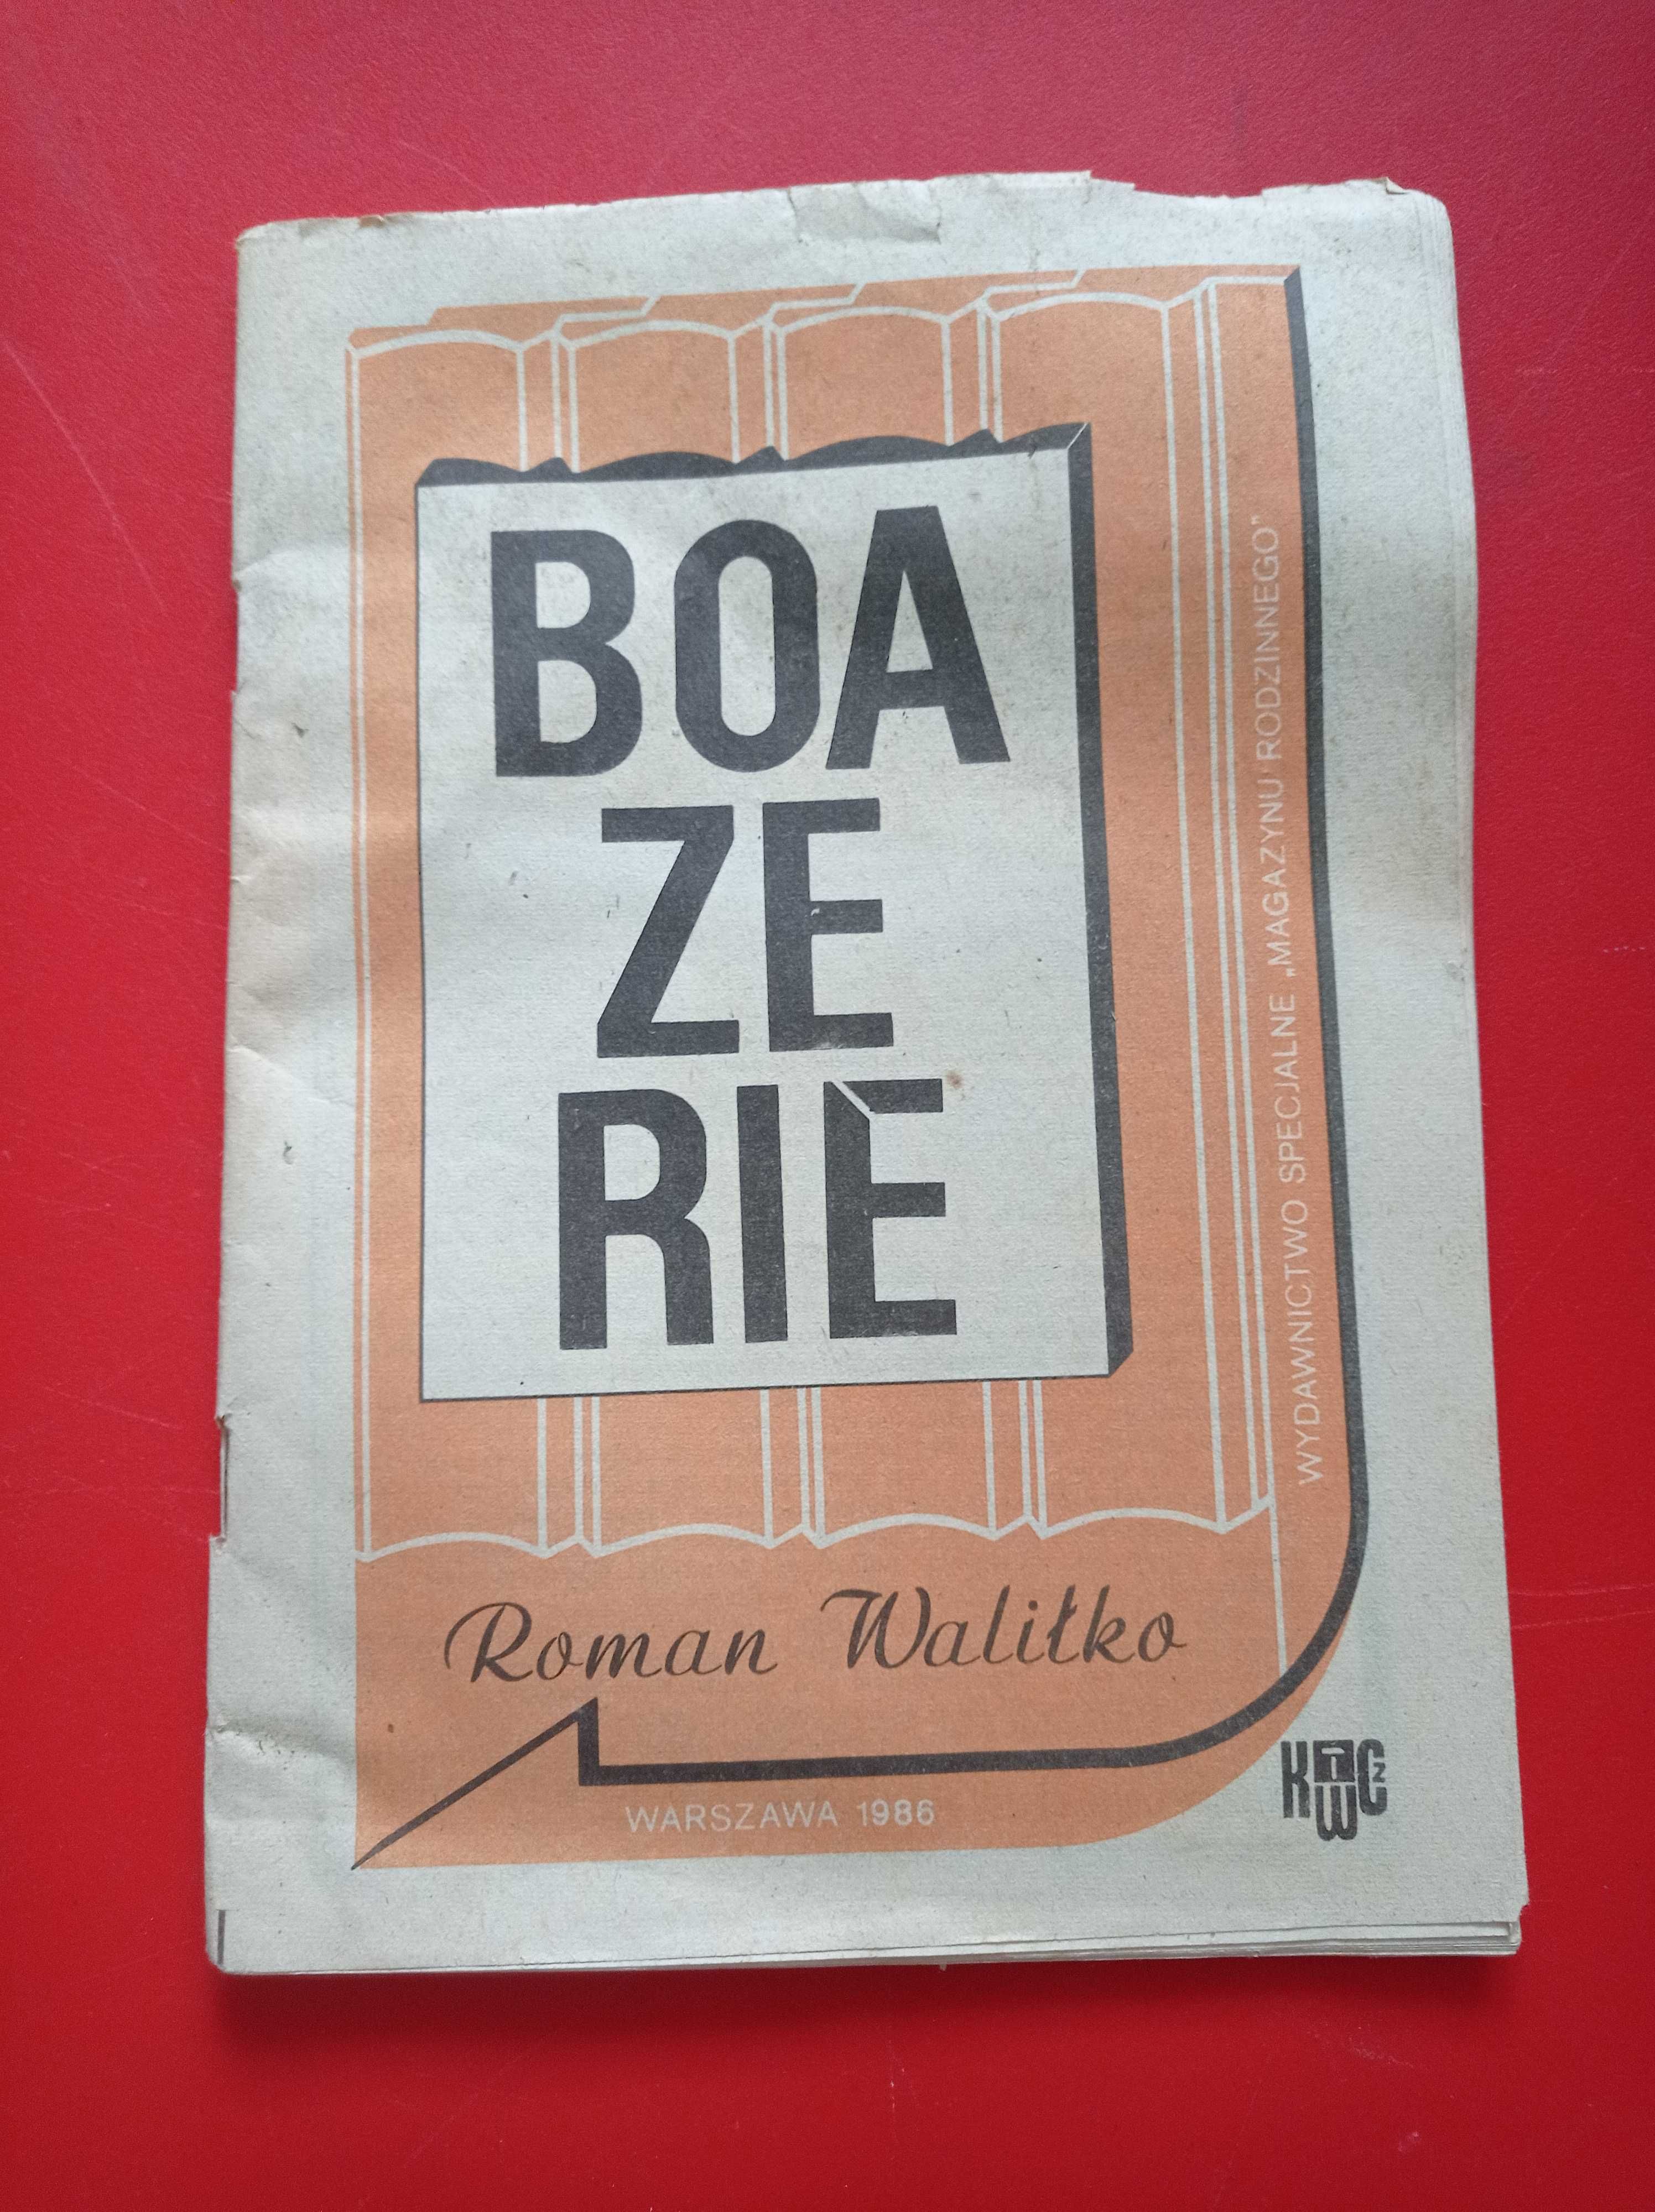 Boazerie, Roman Waliłko